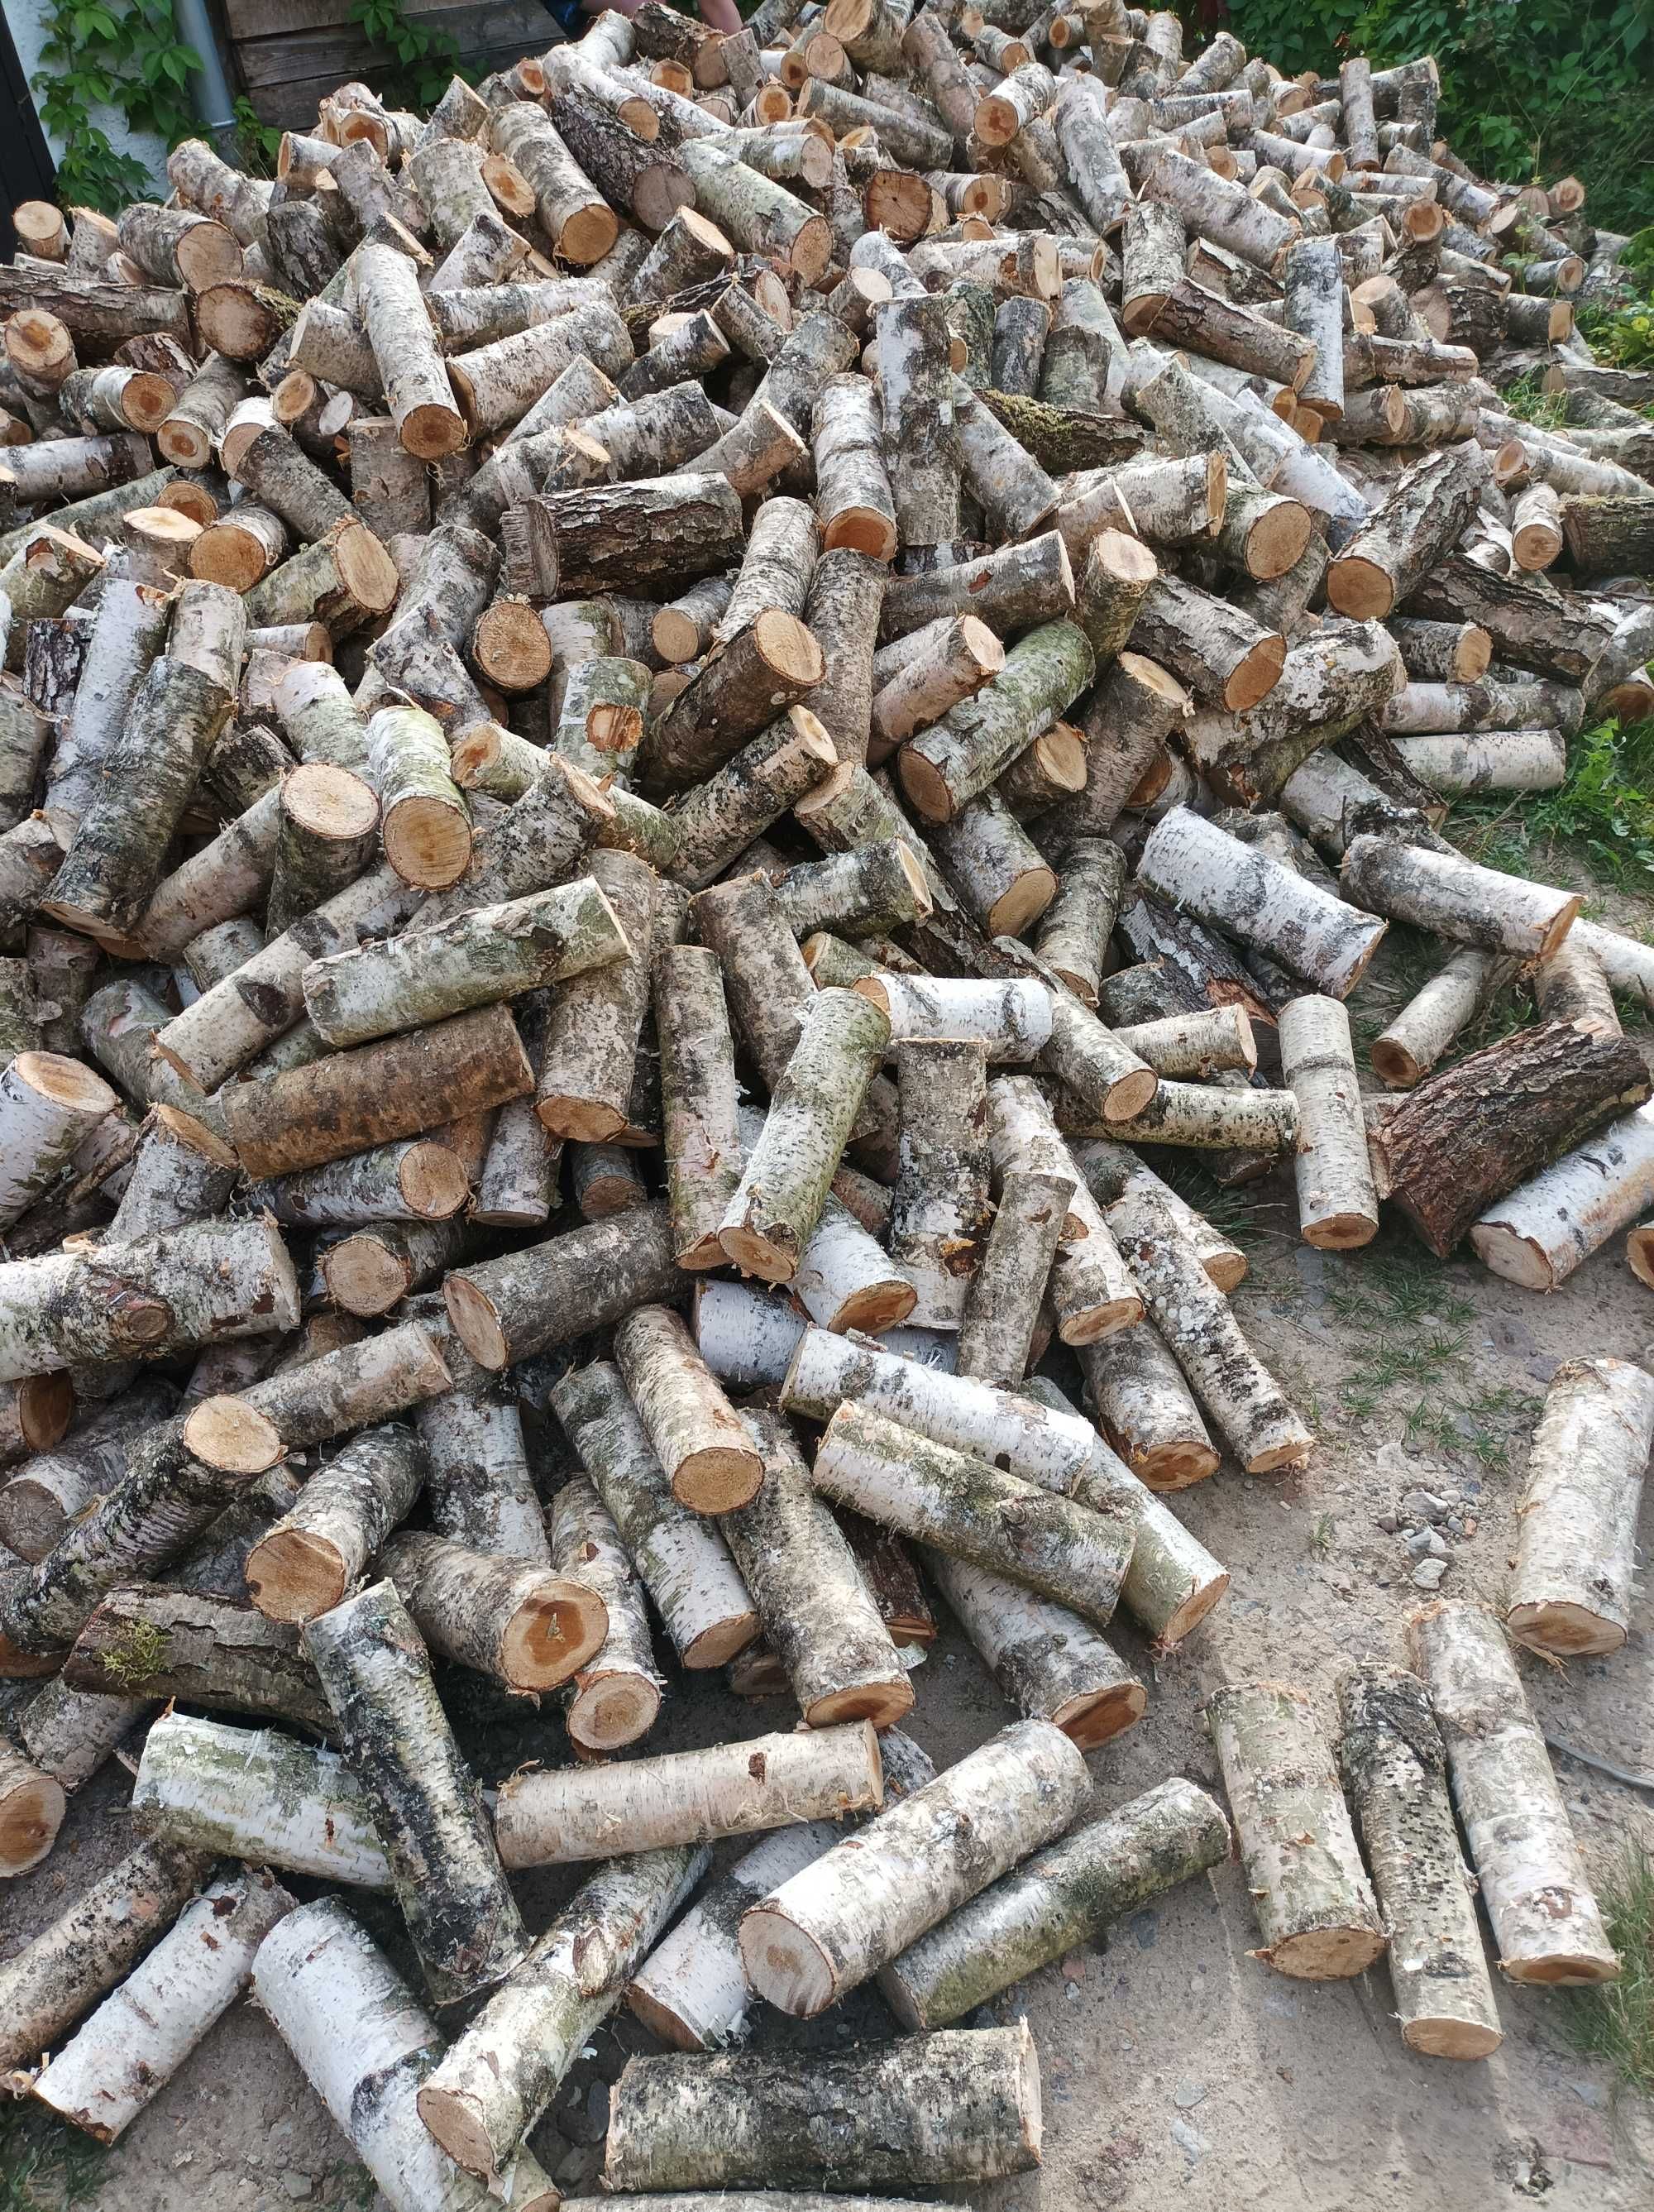 Drewno opałowe suche